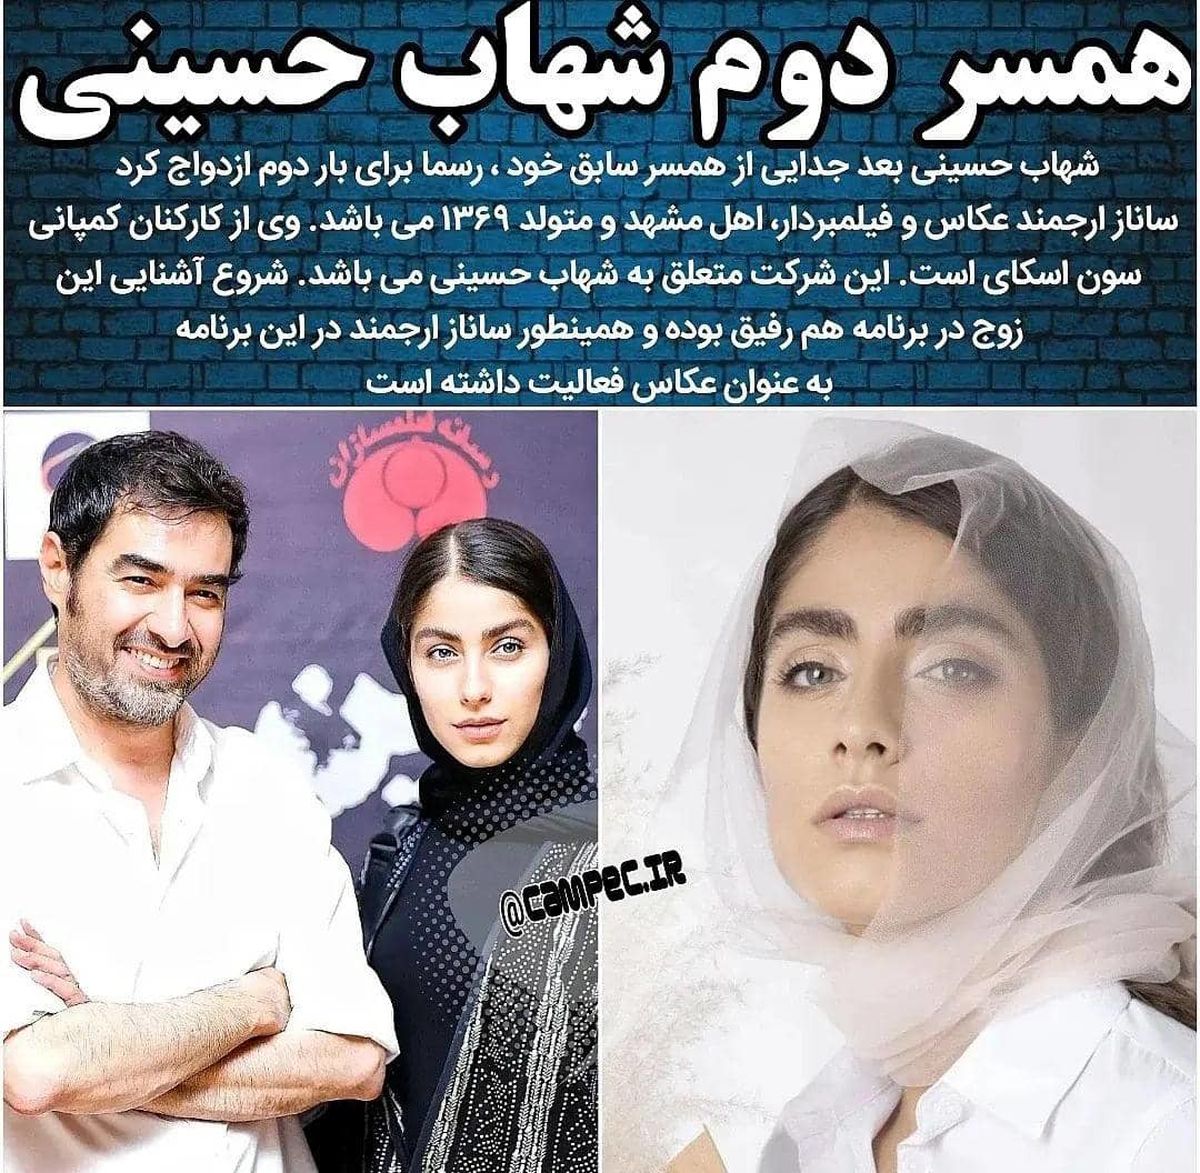 علت-جدایی-شهاب-حسینی-از-همسر-اولش-فاش-شد-عکس-هایی-از-همسر-دومش